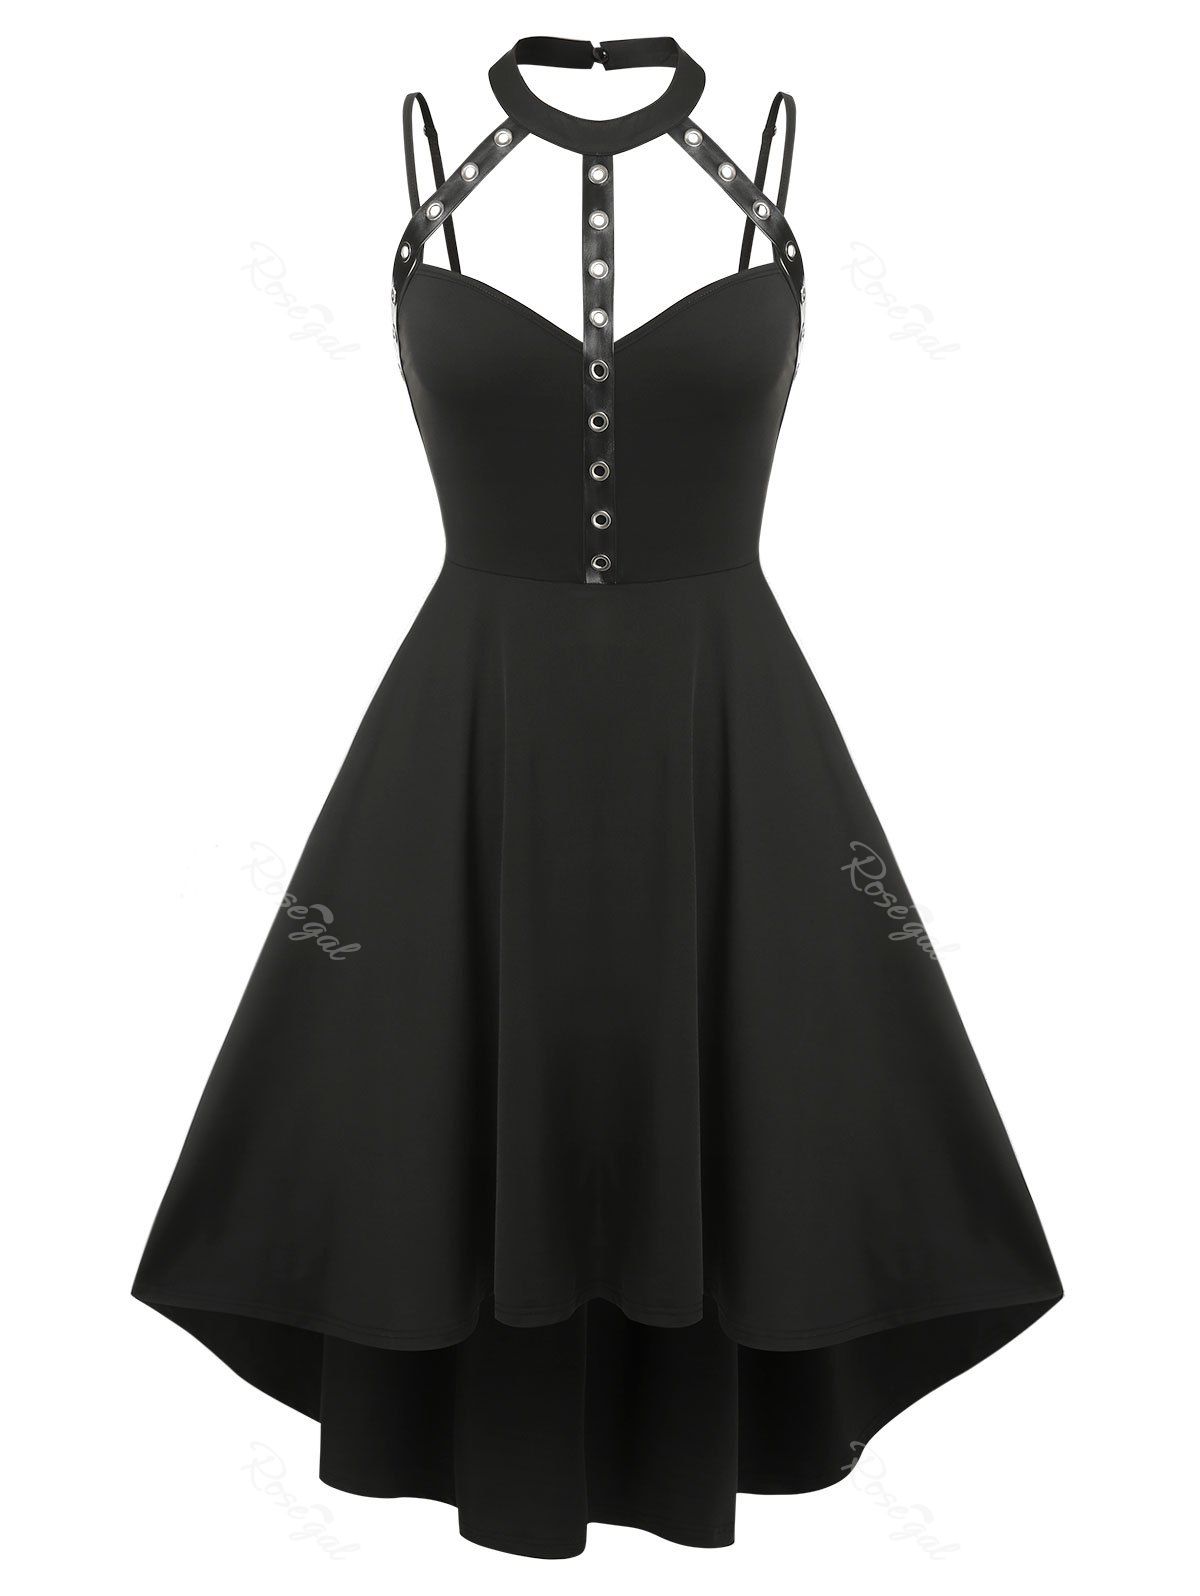 Unique Plus Size Harness Cutout High Low Gothic Dress  